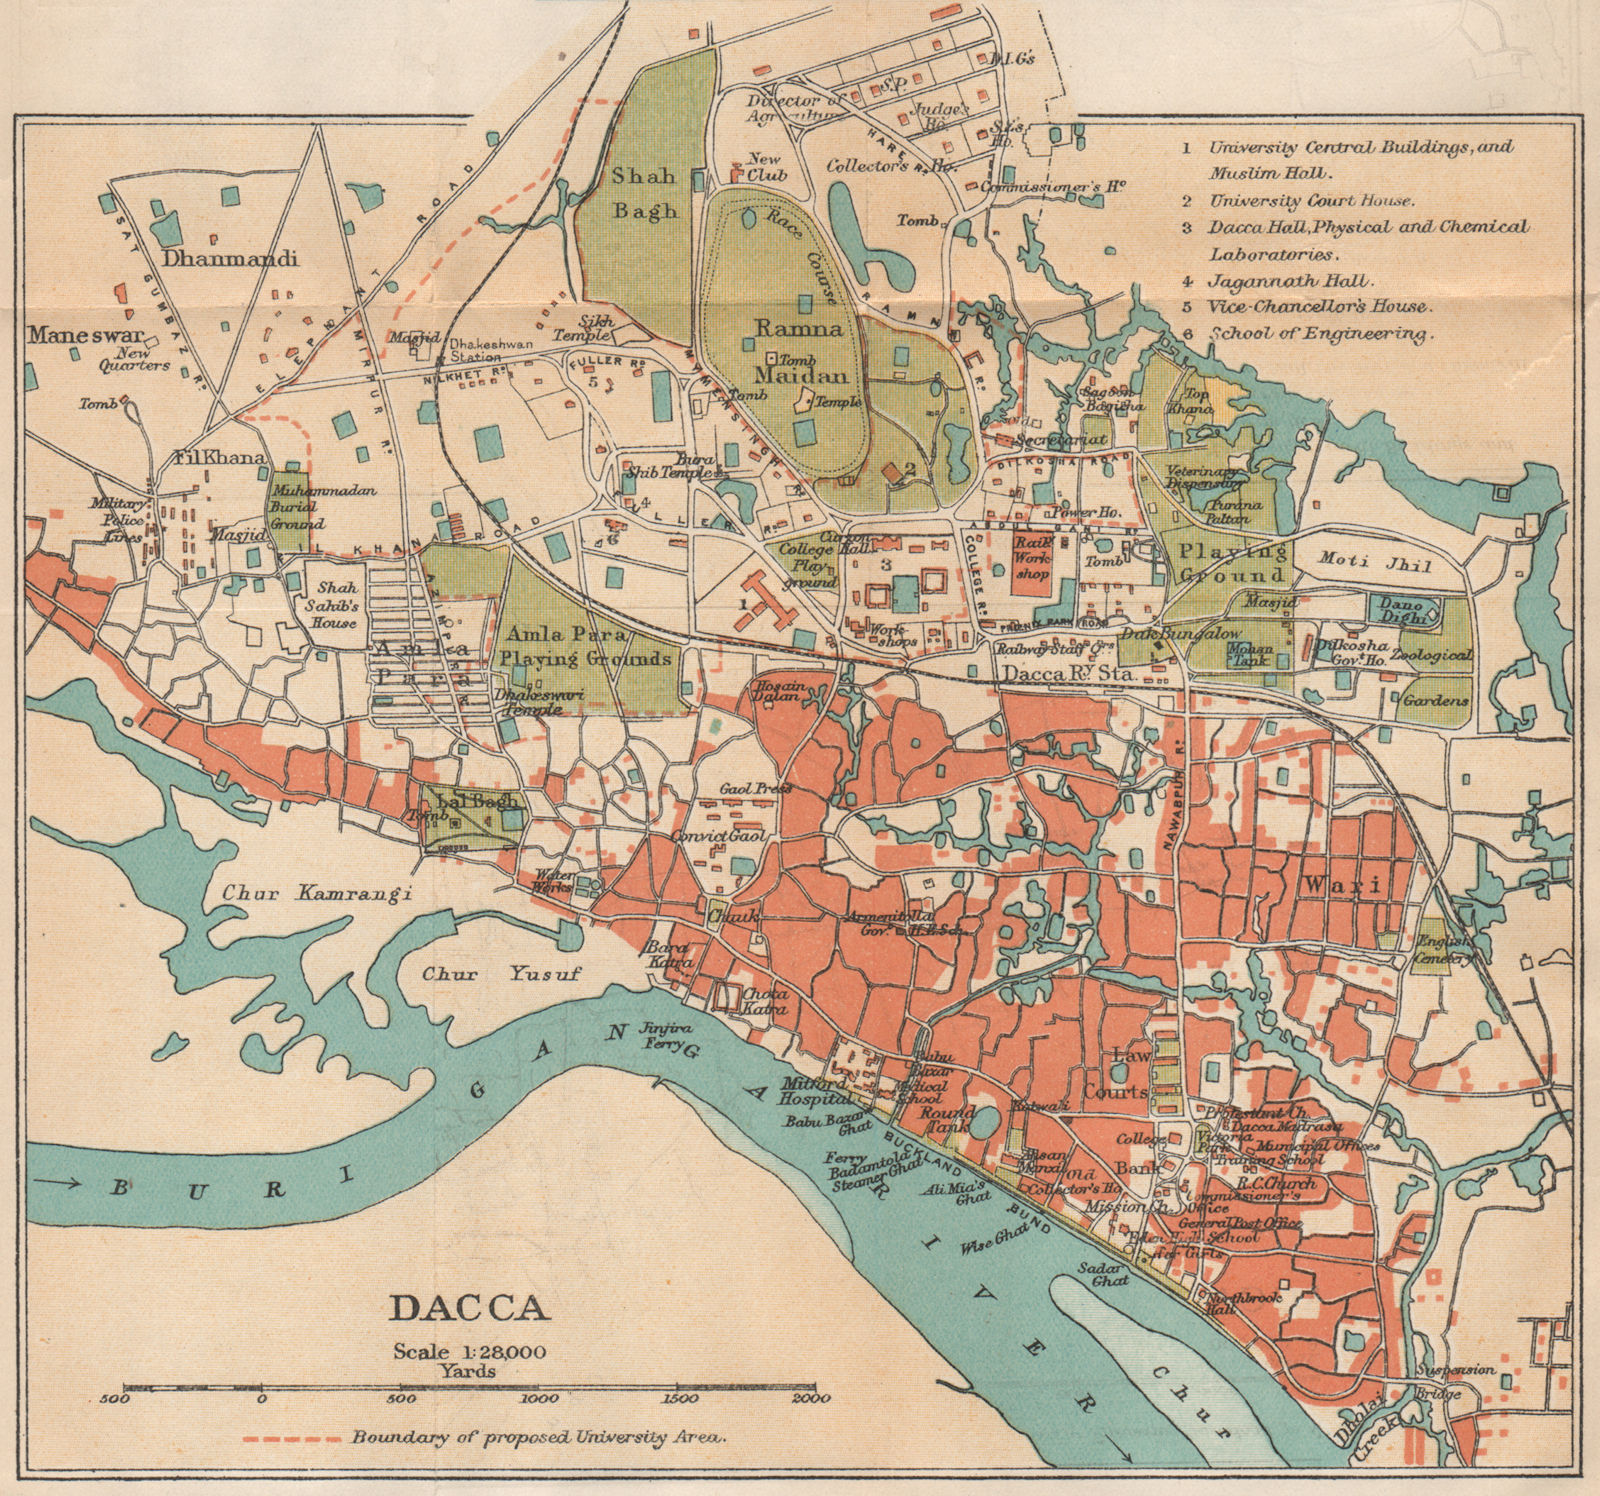 BENGAL/BANGLADESH. Dacca (Dhaka) city plan. British India 1929 old vintage map